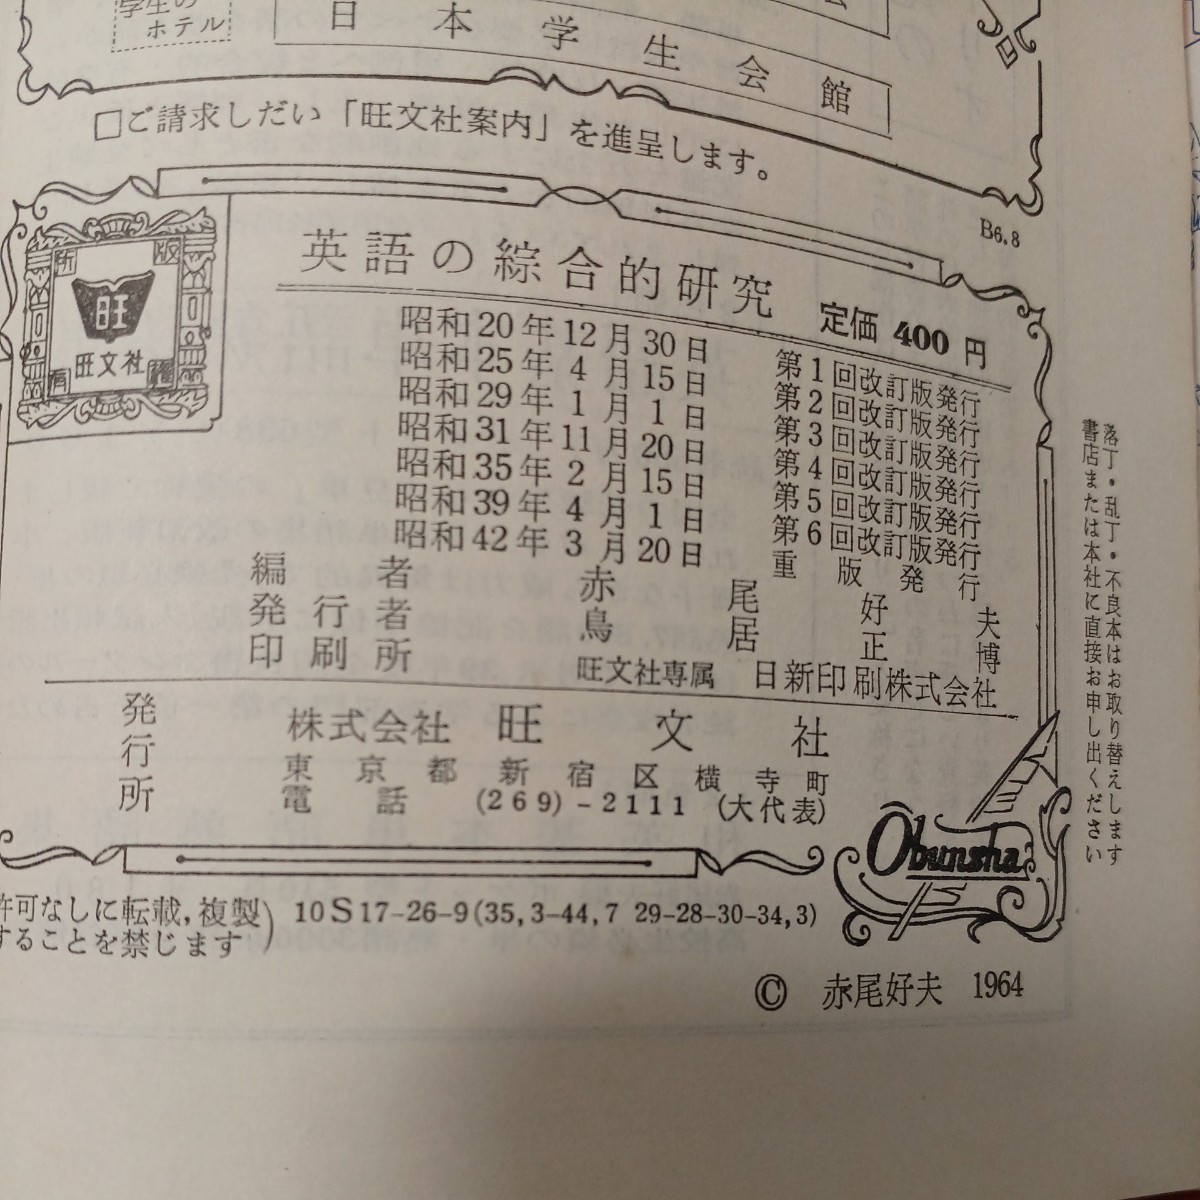 zaa-481♪英語の綜合的研究赤尾 好夫 (編集)　旺文社; 重版 (1967/3/20) 古書 